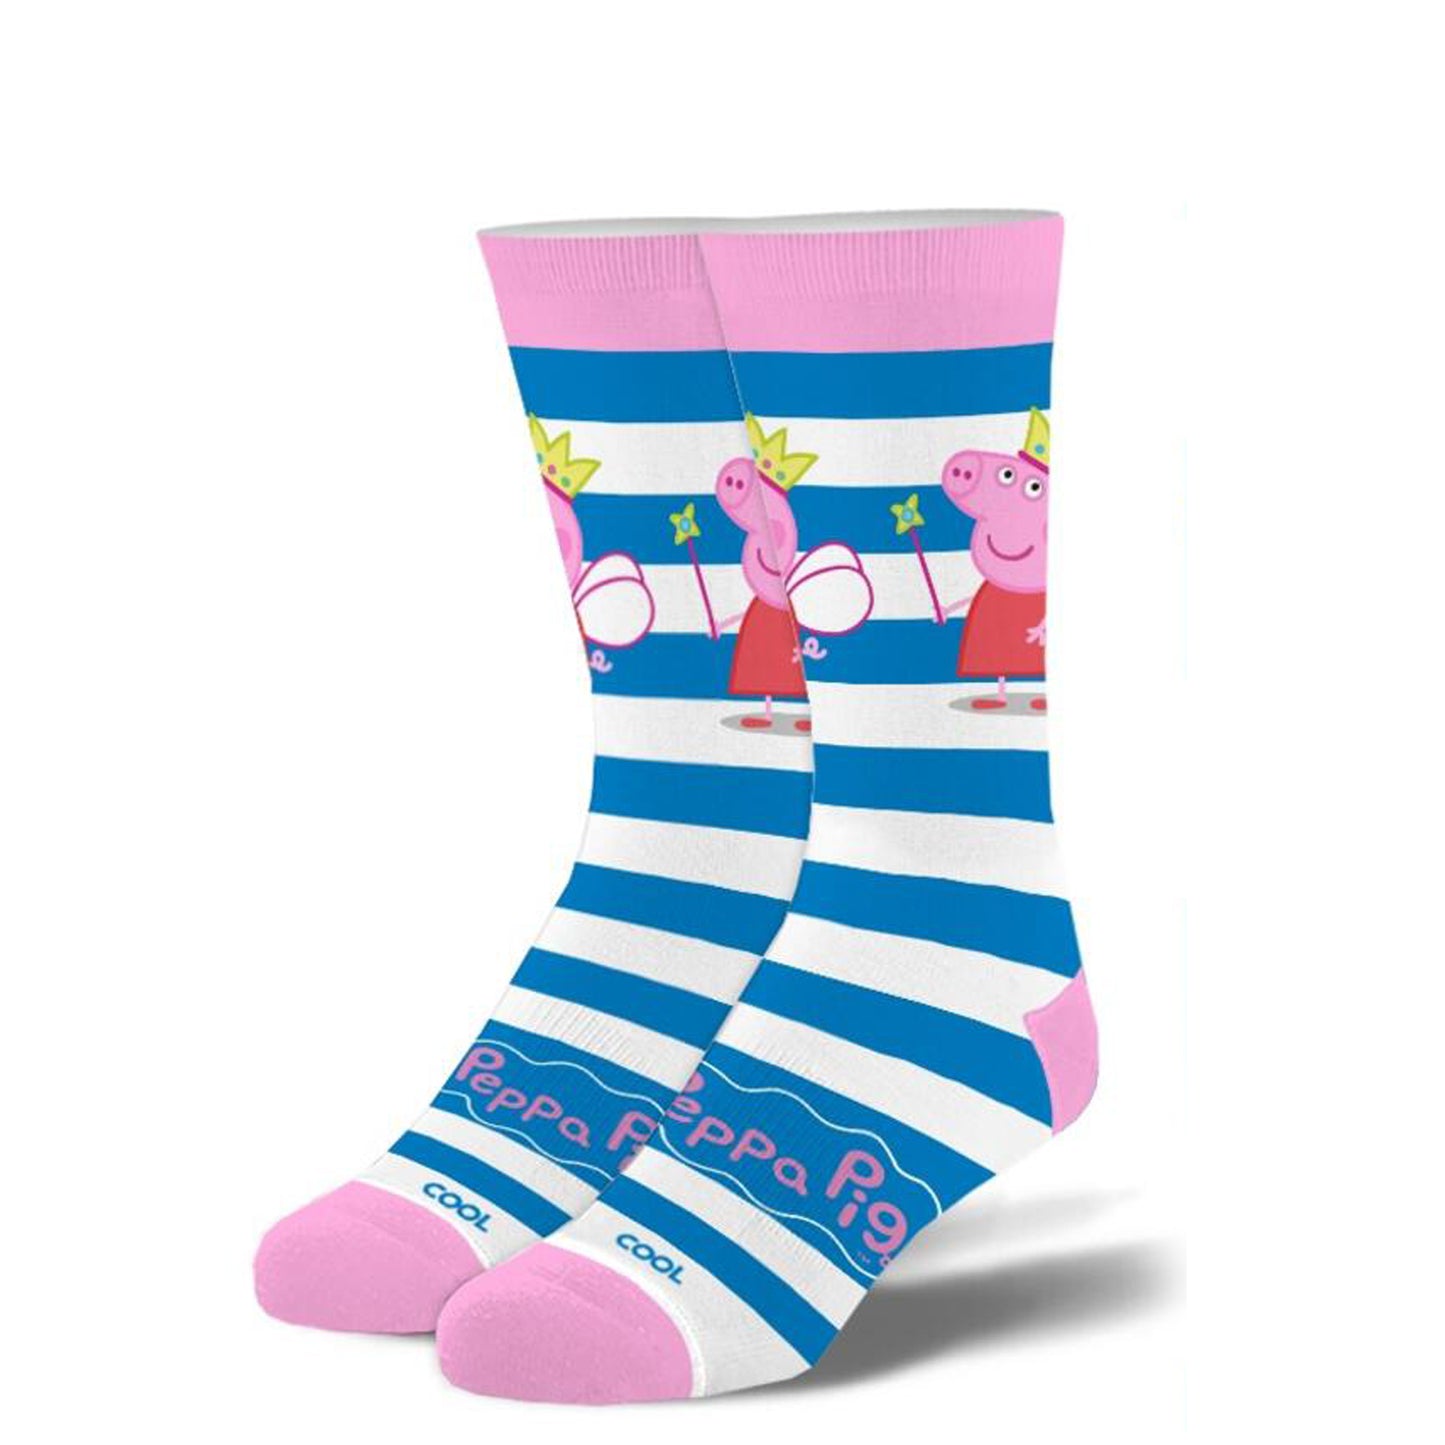 Cool Socks Kids Crew Socks - Peppa Pig (7-10 Years Old)